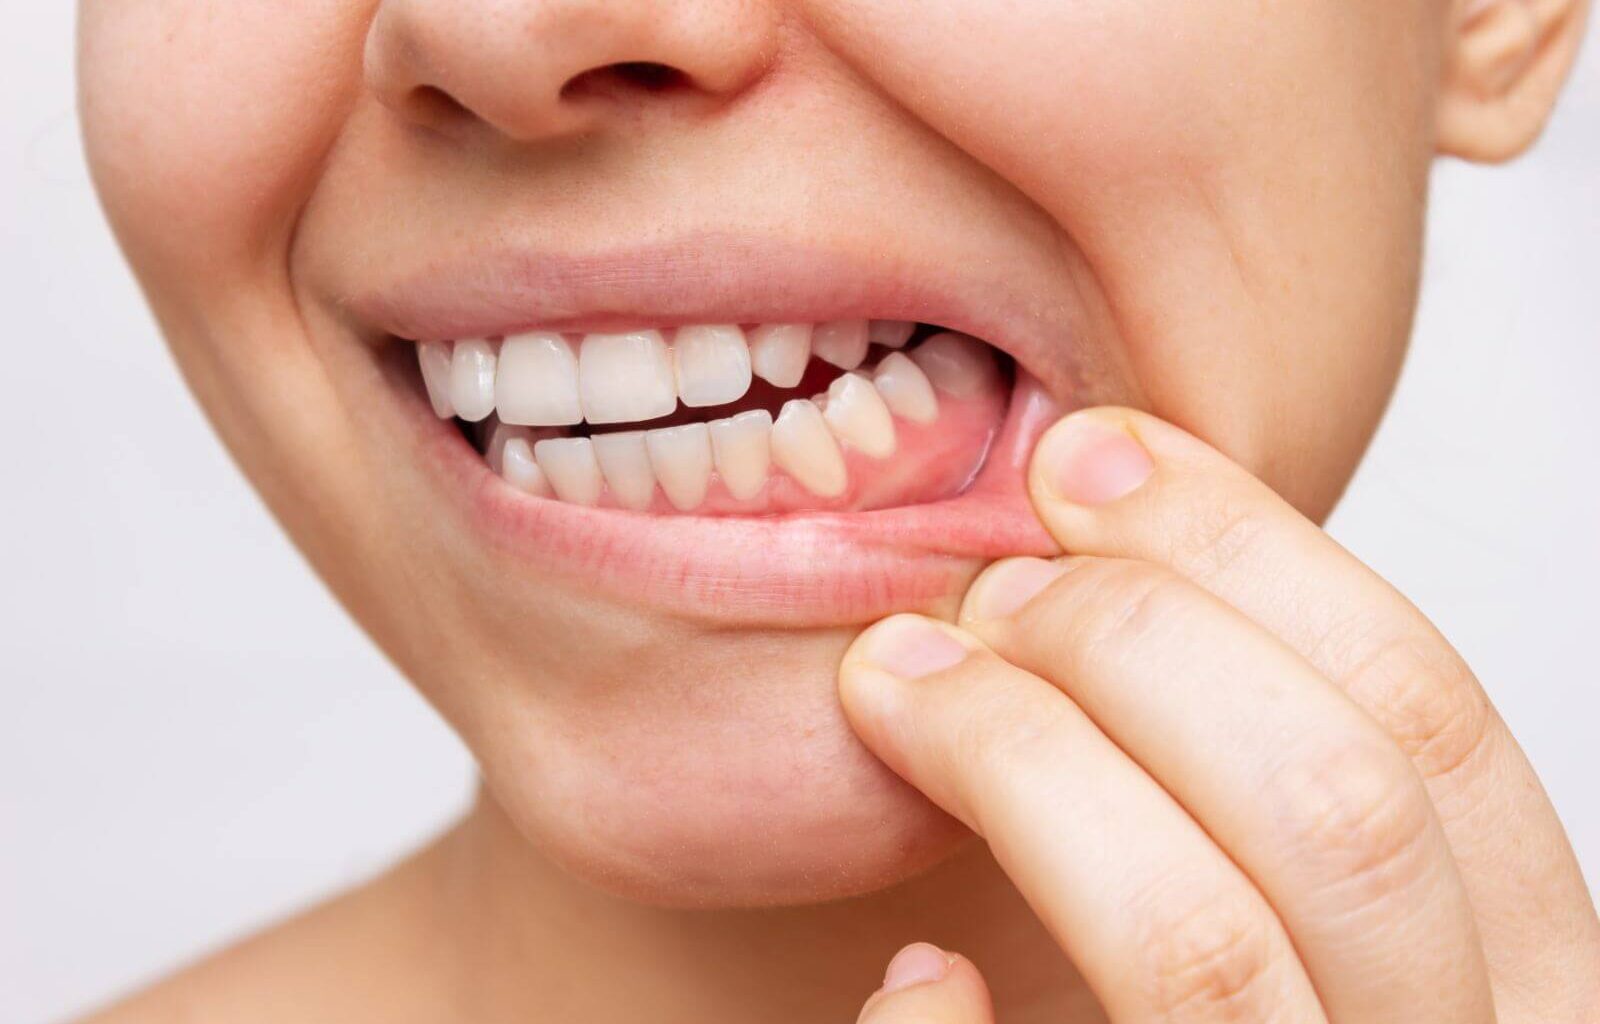 resztki zęba w dziąśle po wyrwaniu